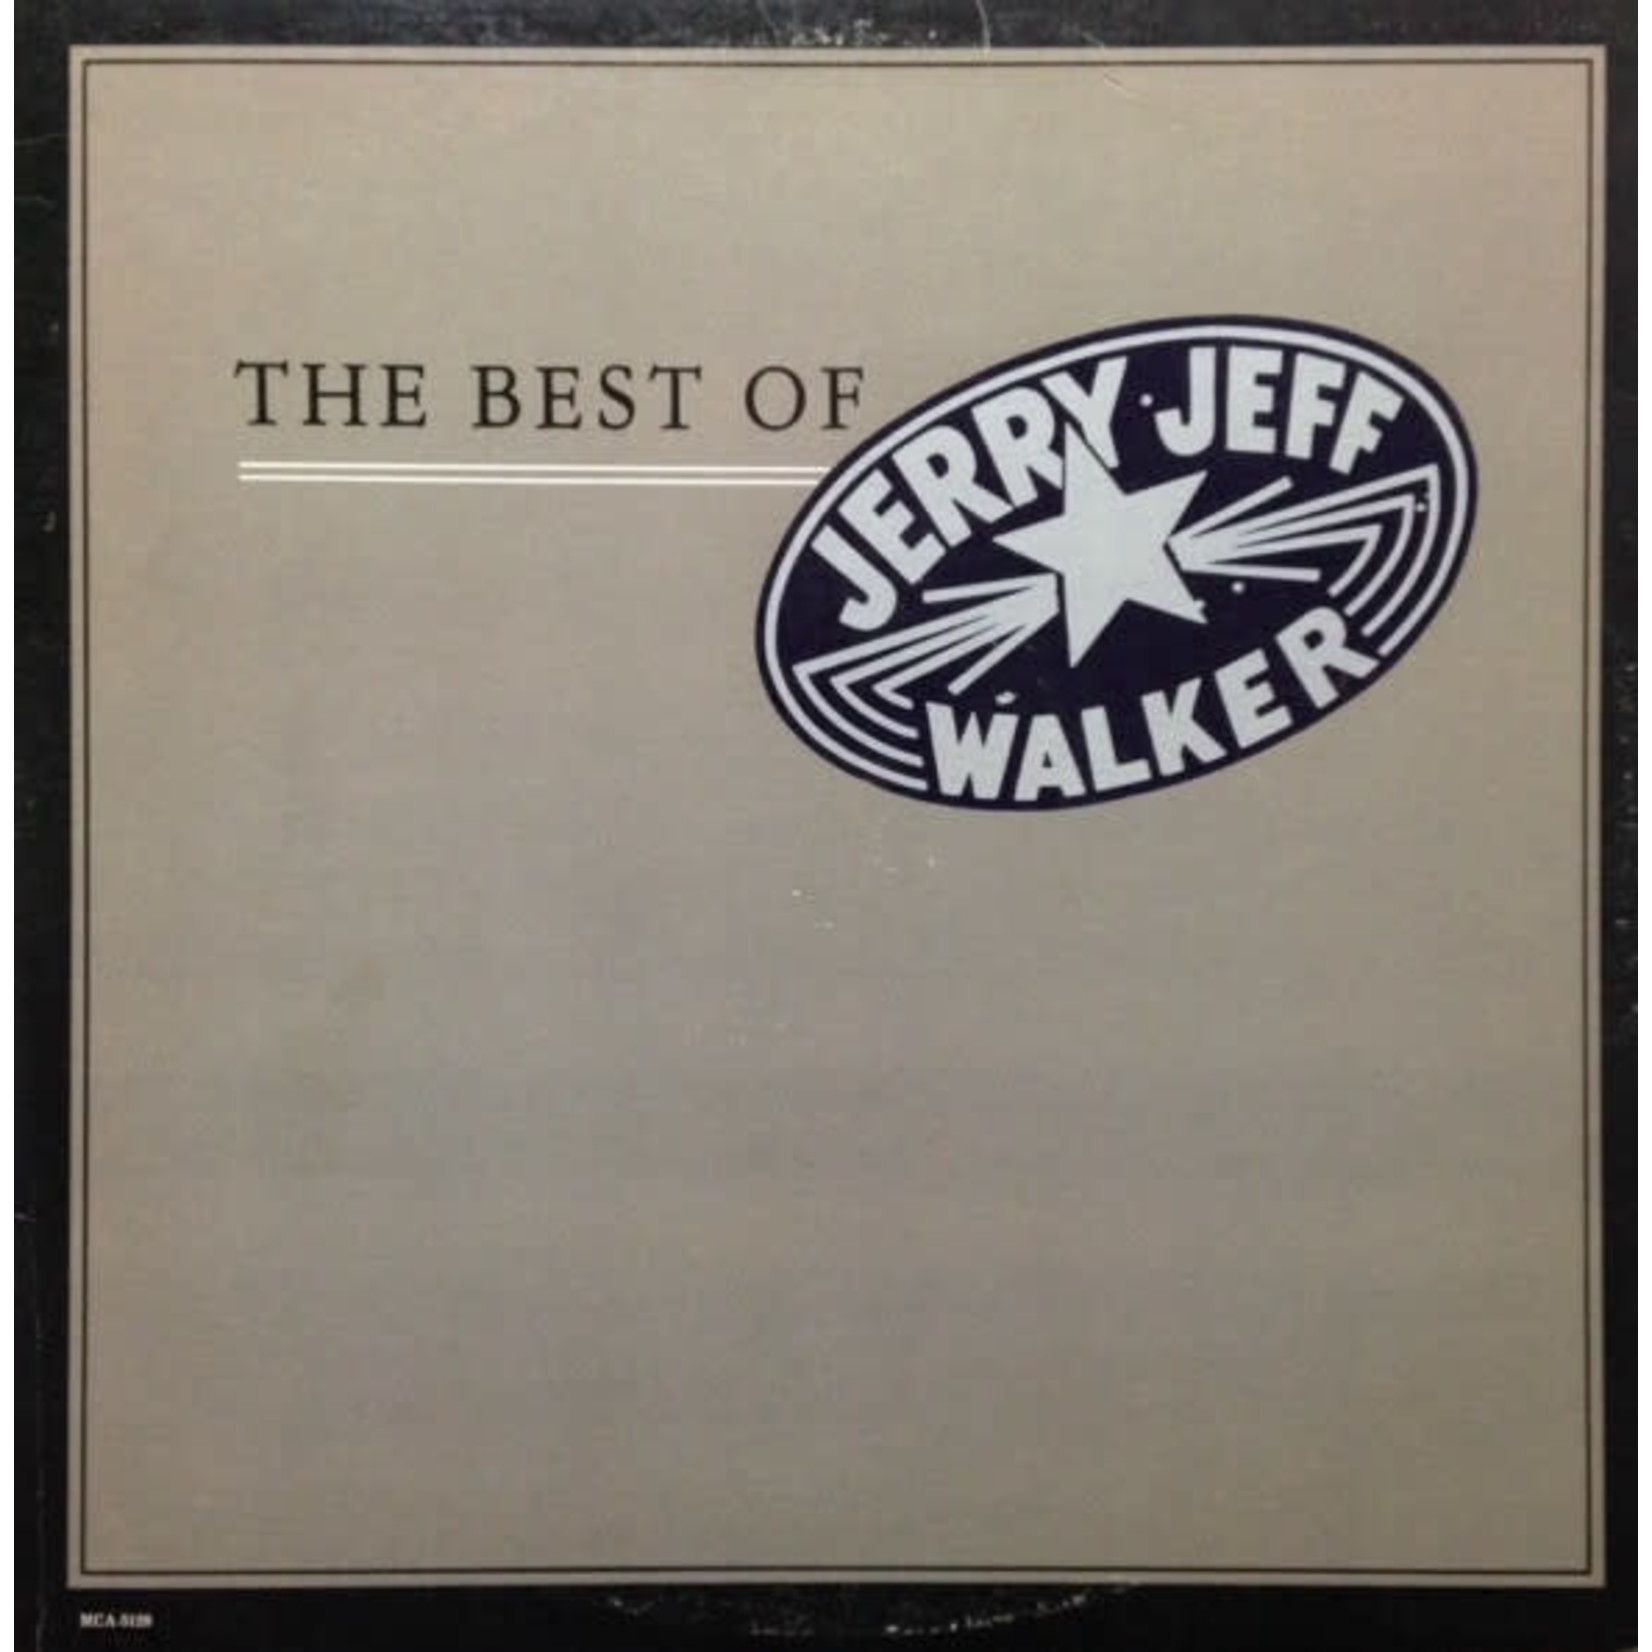 Jerry Jeff Walker Jerry Jeff Walker – The Best Of Jerry Jeff Walker (VG, 1980, LP, MCA Records – MCA-5128)